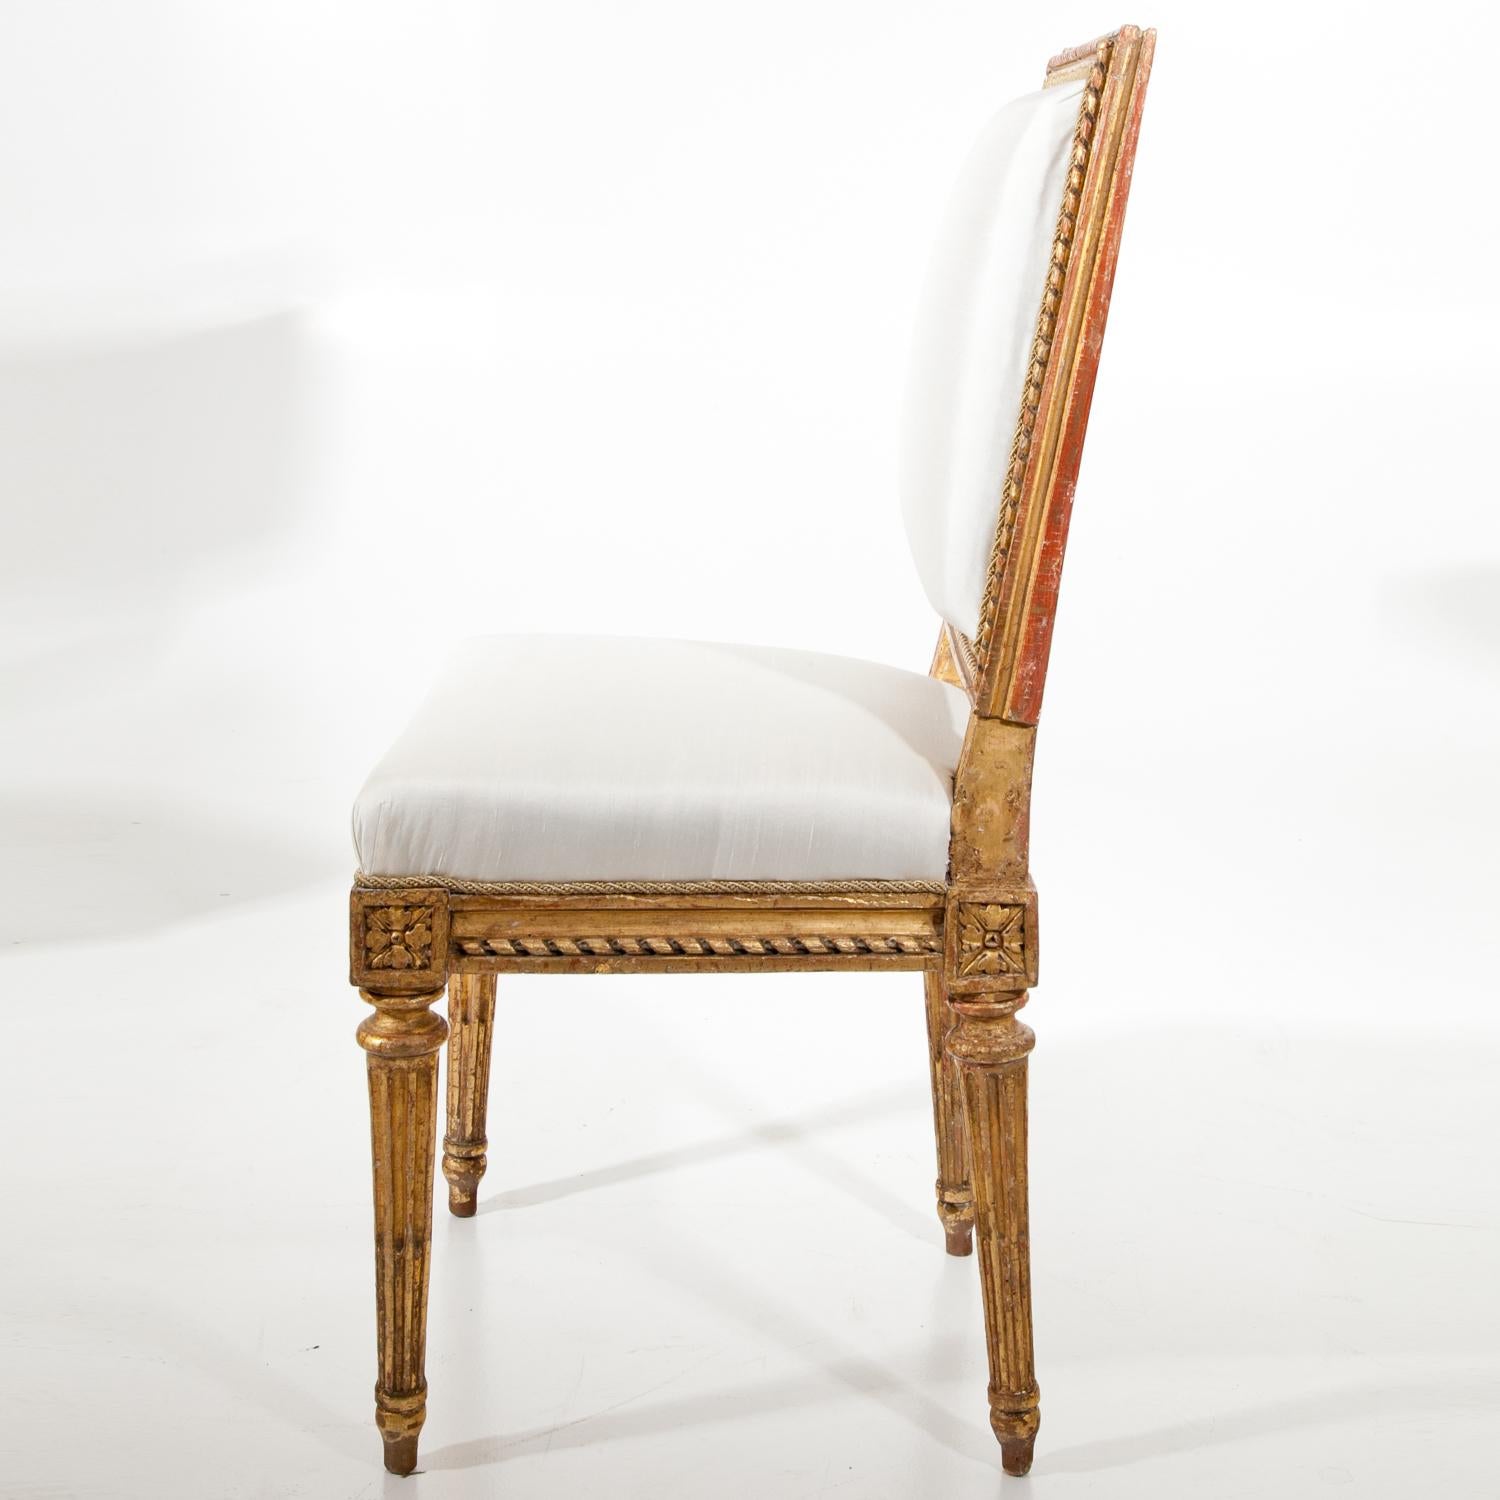 Vergoldeter Kinderstuhl von Jean Baptiste Boulard (1725-1789) auf konisch zulaufenden, kannelierten Beinen, mit neu gepolsterter Rückenlehne und Sitzfläche in Weiß. Auf der Unterseite gestempelt JB Boulard.